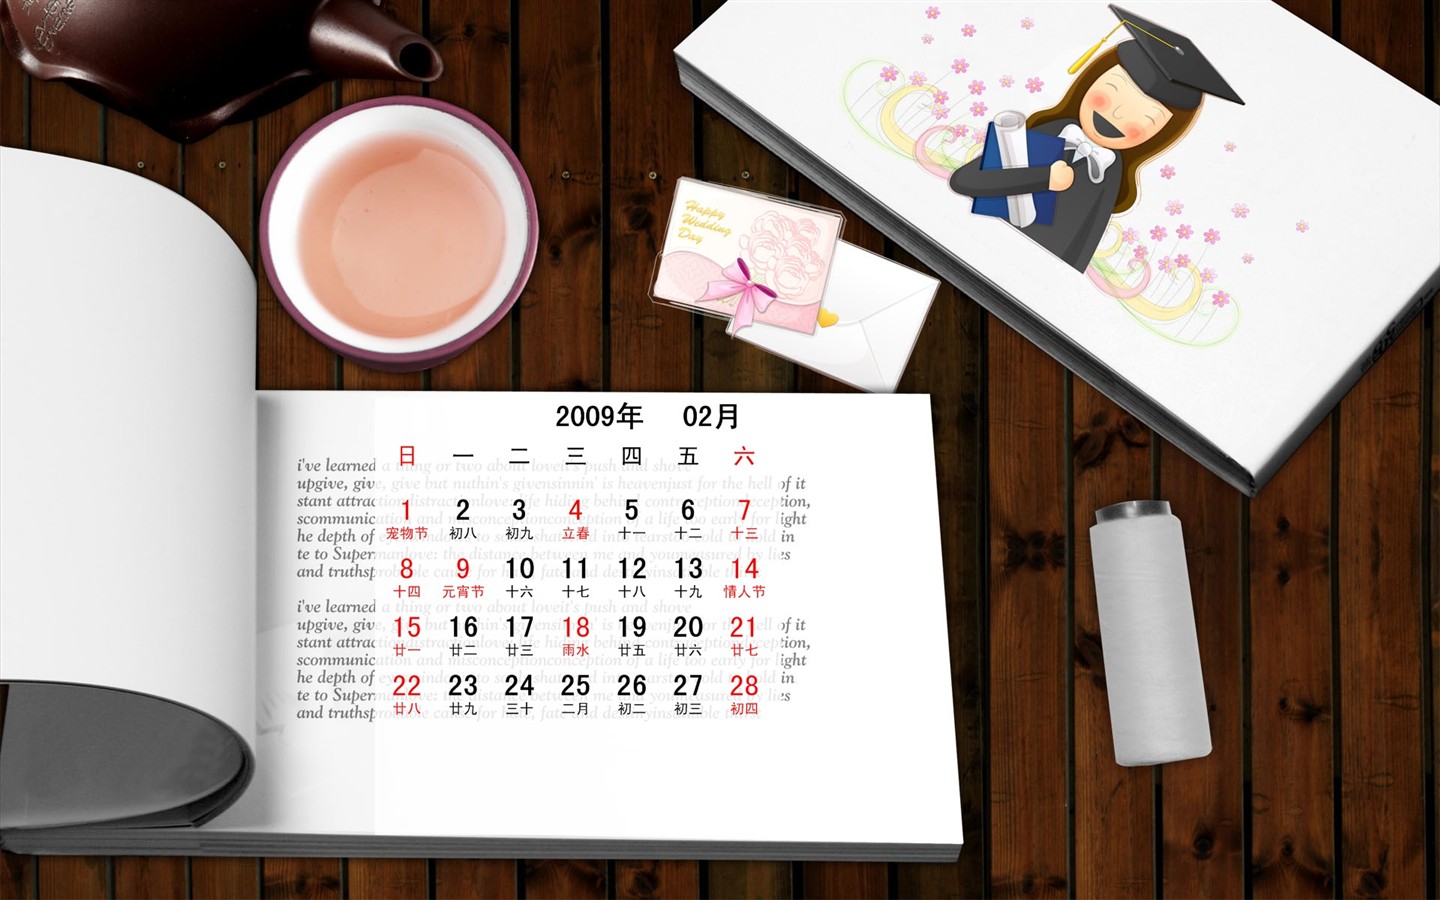 PaperArt 09 años en el fondo de pantalla de calendario febrero #31 - 1440x900